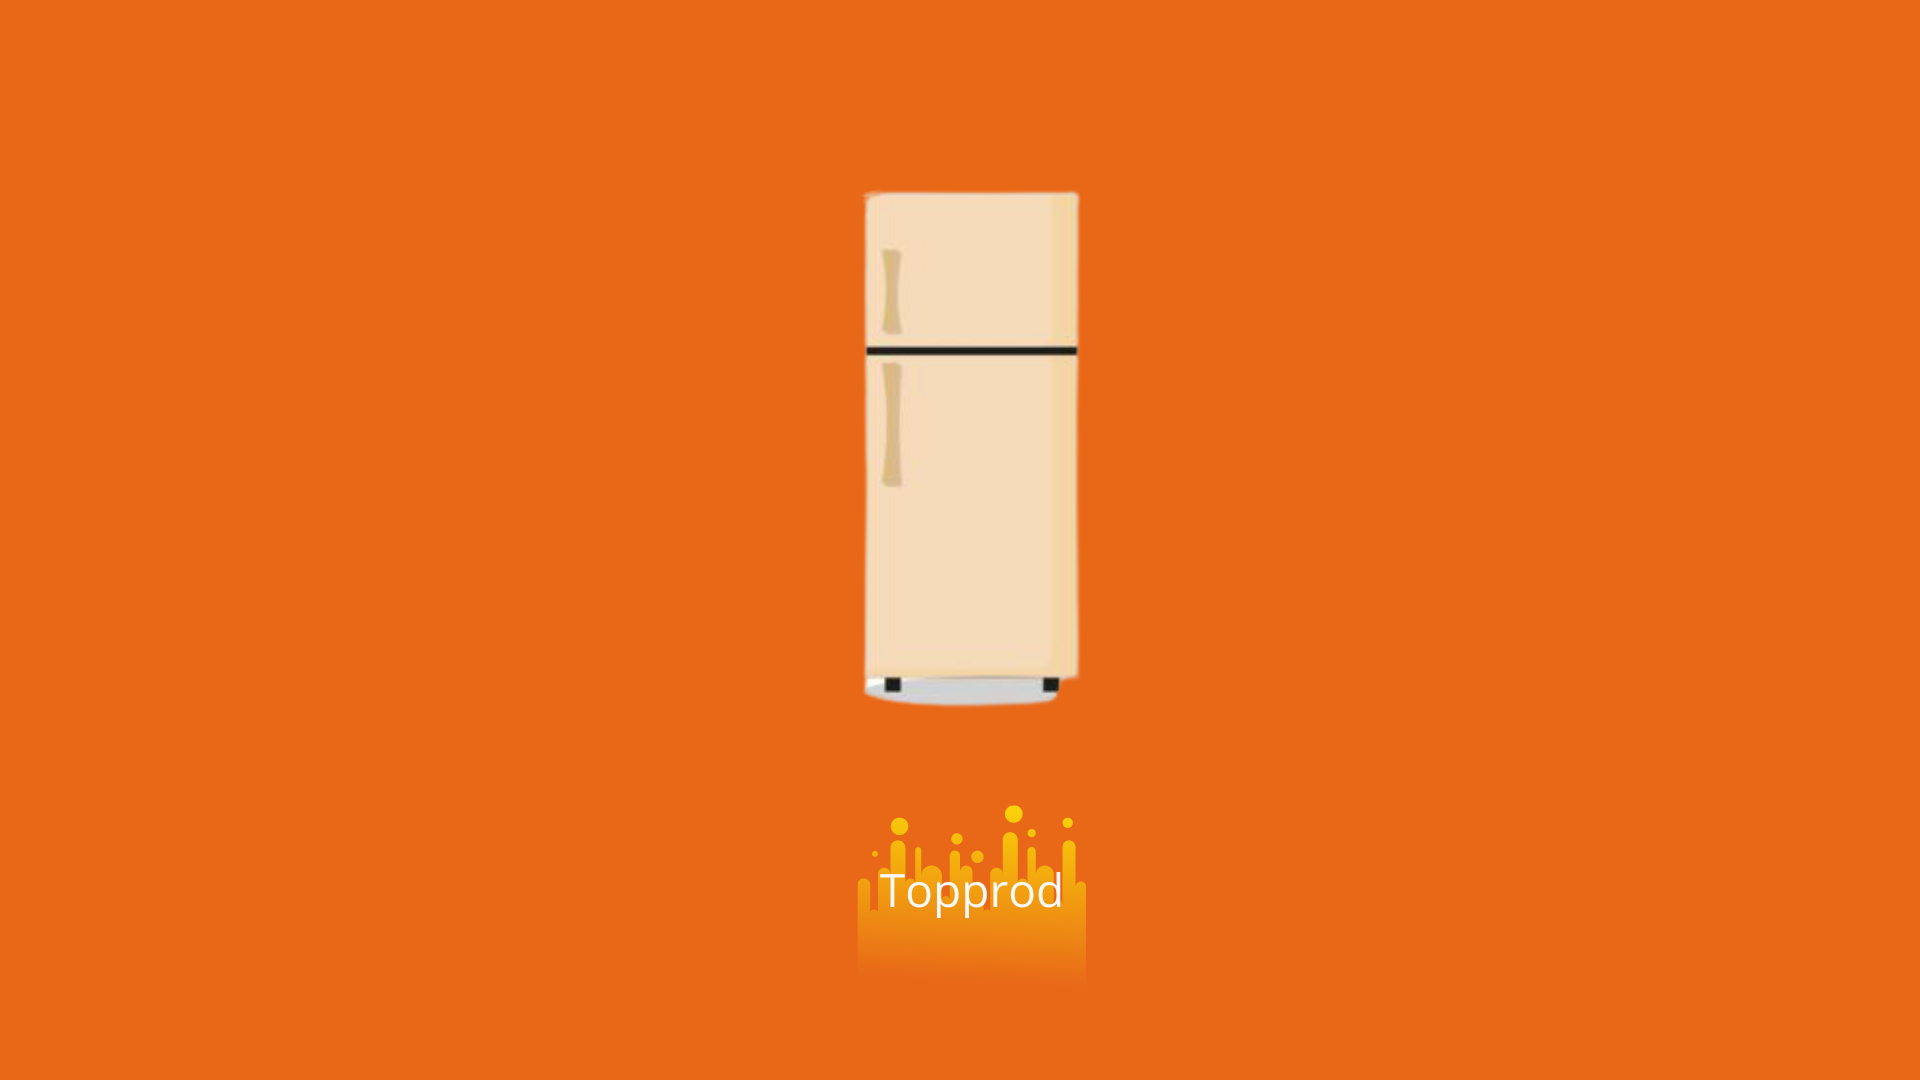 Best Single Door Refrigerator Under 15000 In India